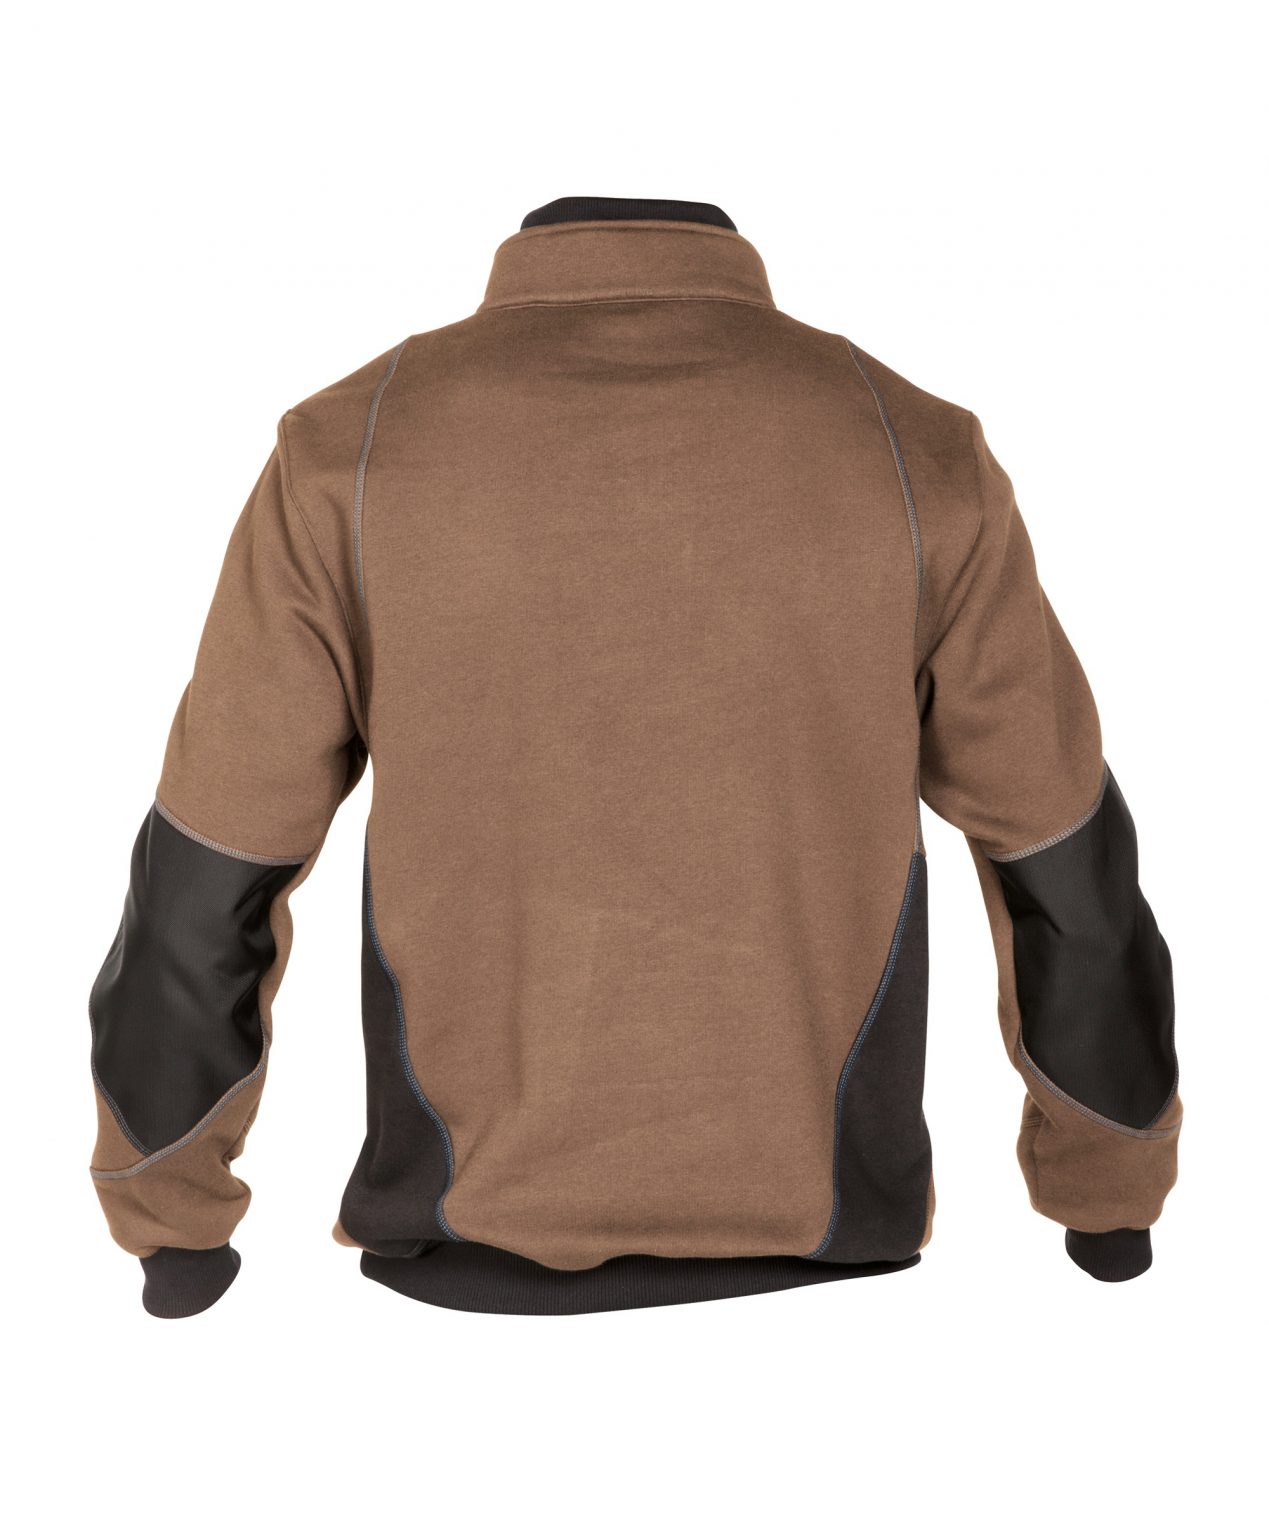 stellar sweatshirt clay brown anthracite grey back